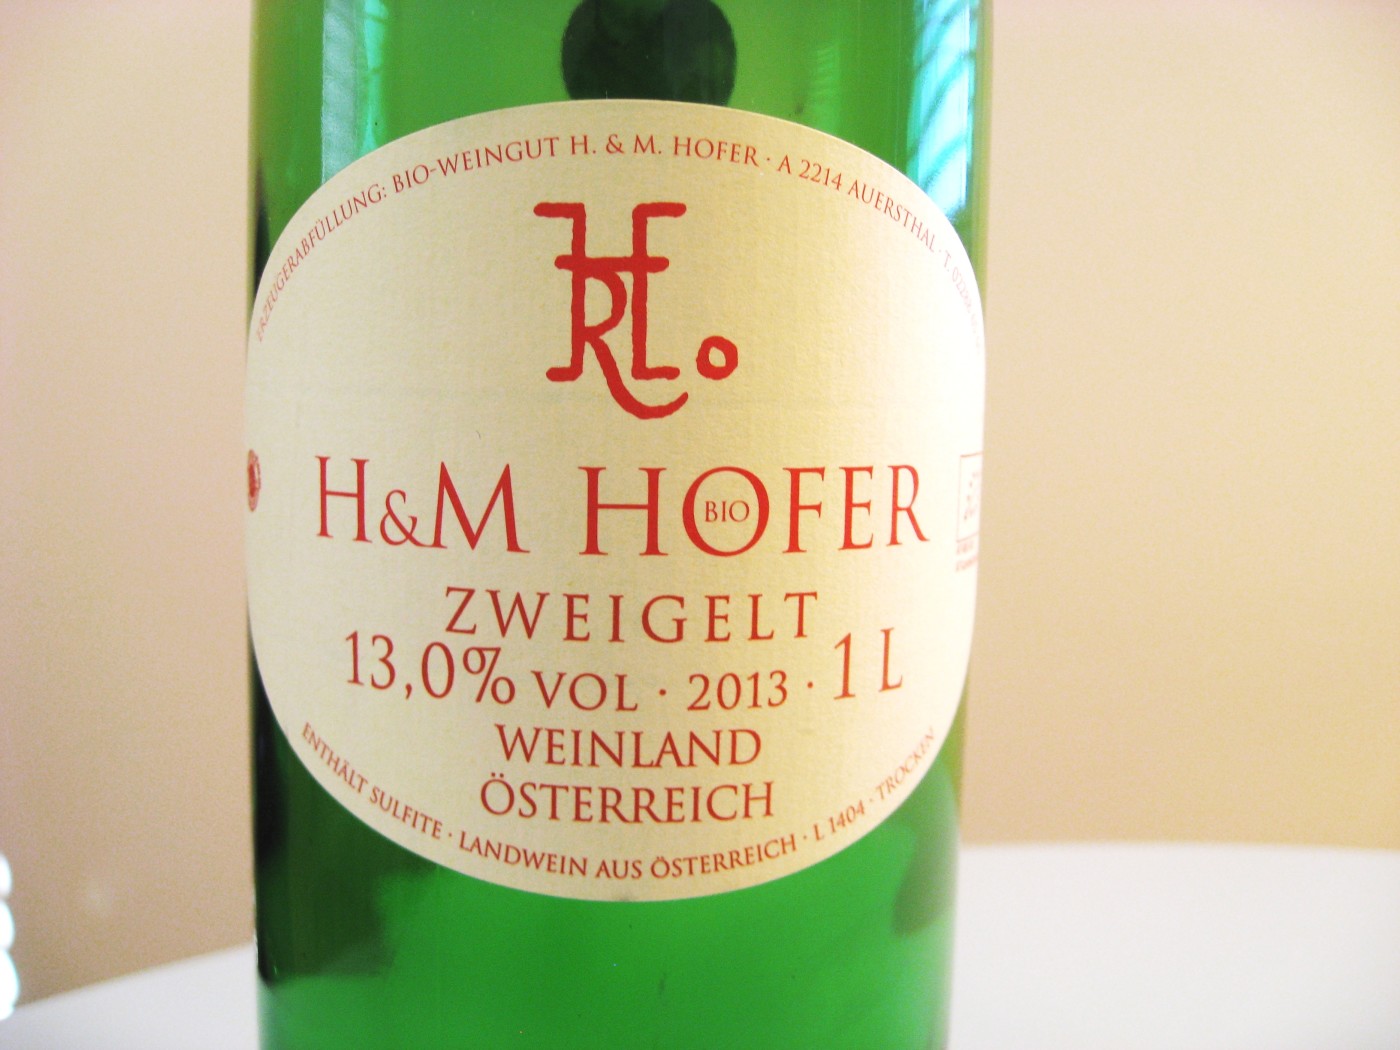 H&M Hofer, Zweigelt 2013, Weinland, Osterreich, Austria, Wine Casual